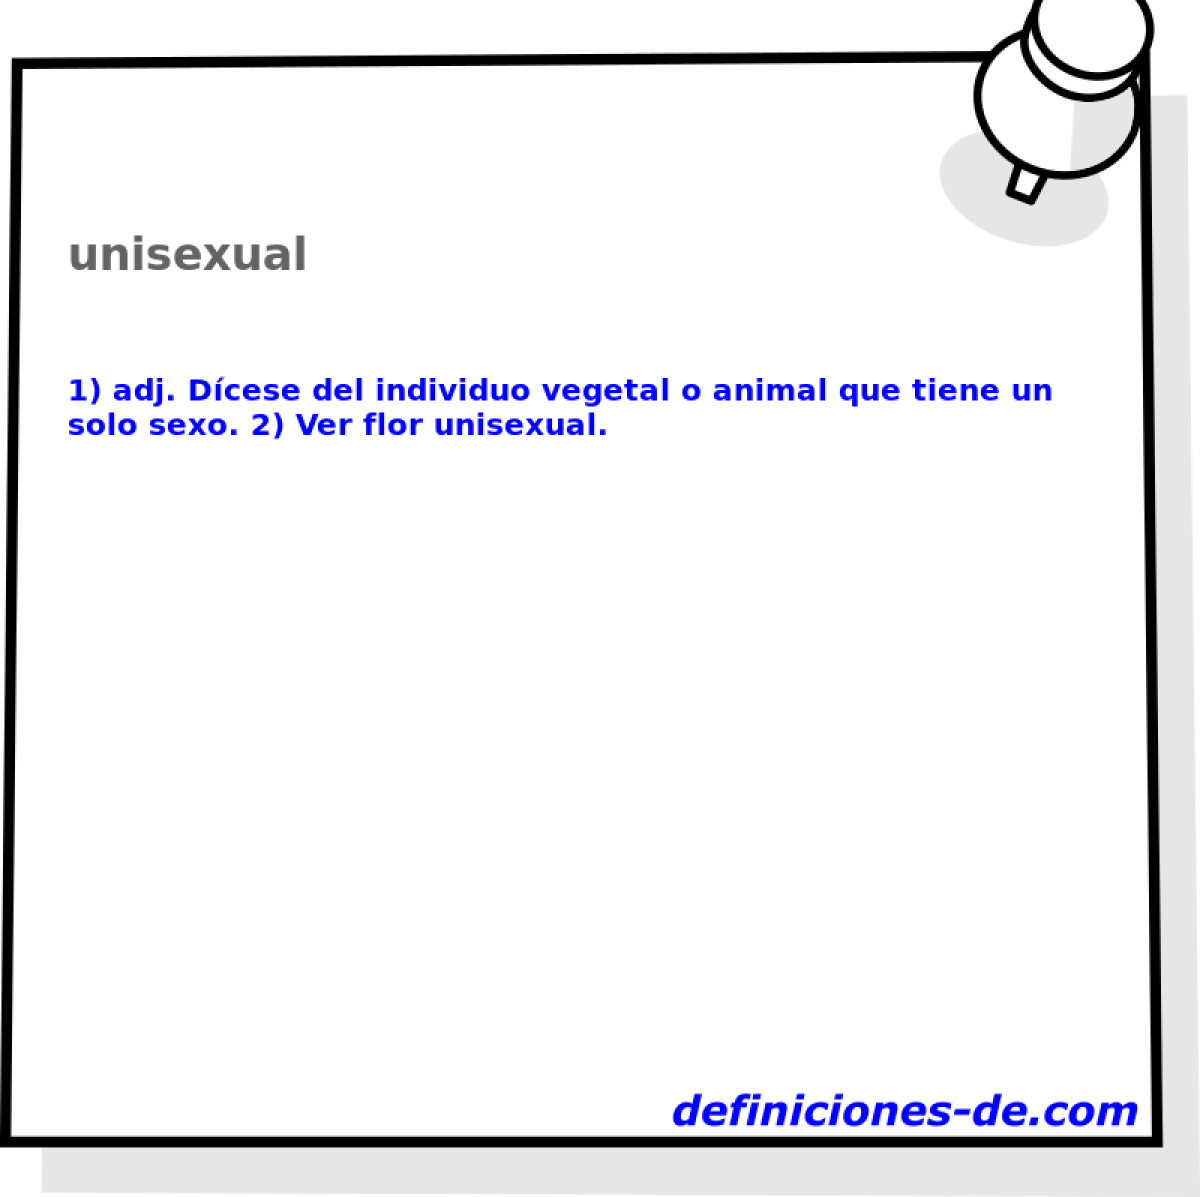 unisexual 